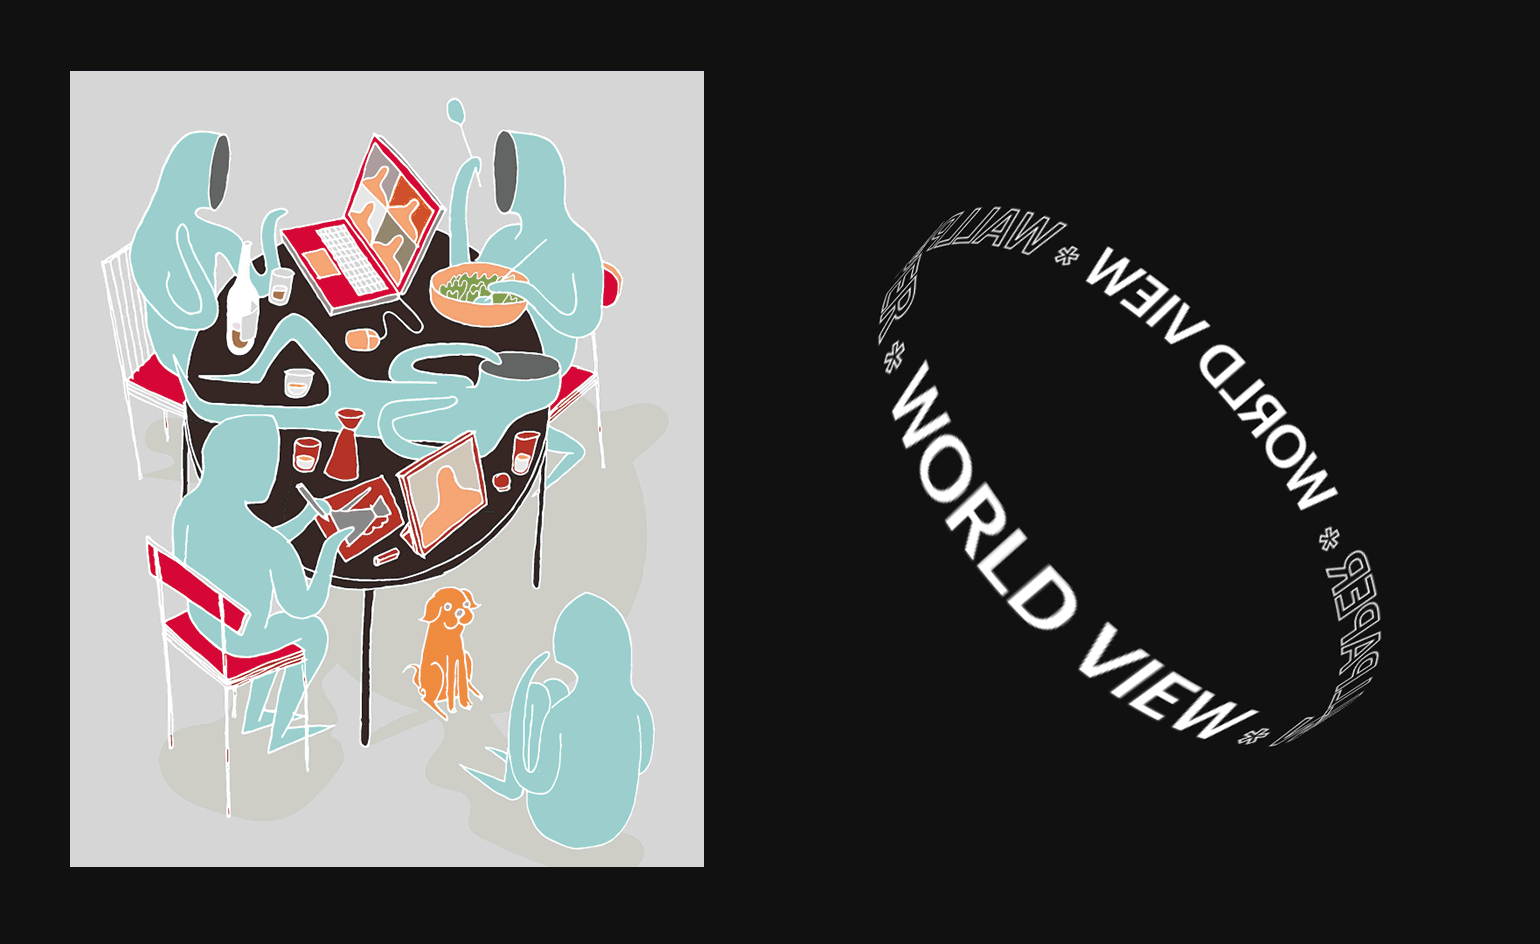 Wallpaper* World View